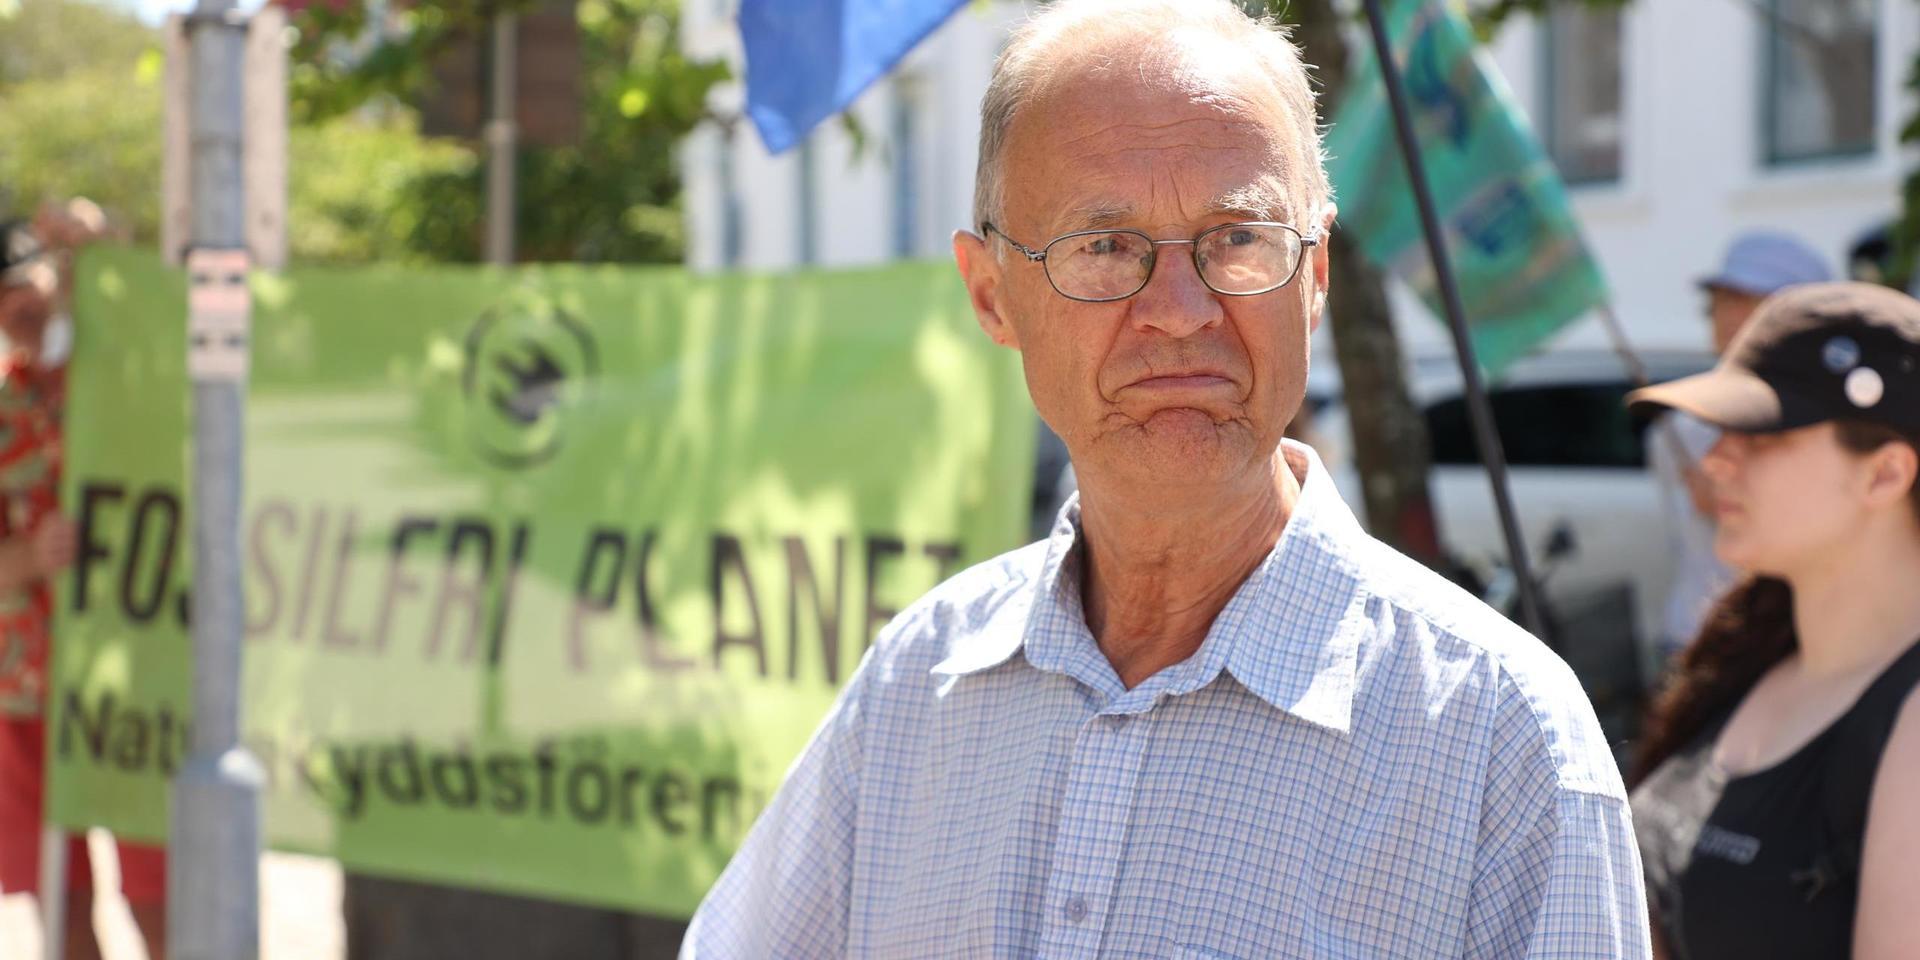 Inge Löfgren, ordförande i Naturskyddsföreningen Lysekil-Munkedal, var besviken efter Mark- och miljööverdomstolens besked, liksom de andra deltagarna i den stillsamma demonstrationen på Kungstorget i Lysekil.